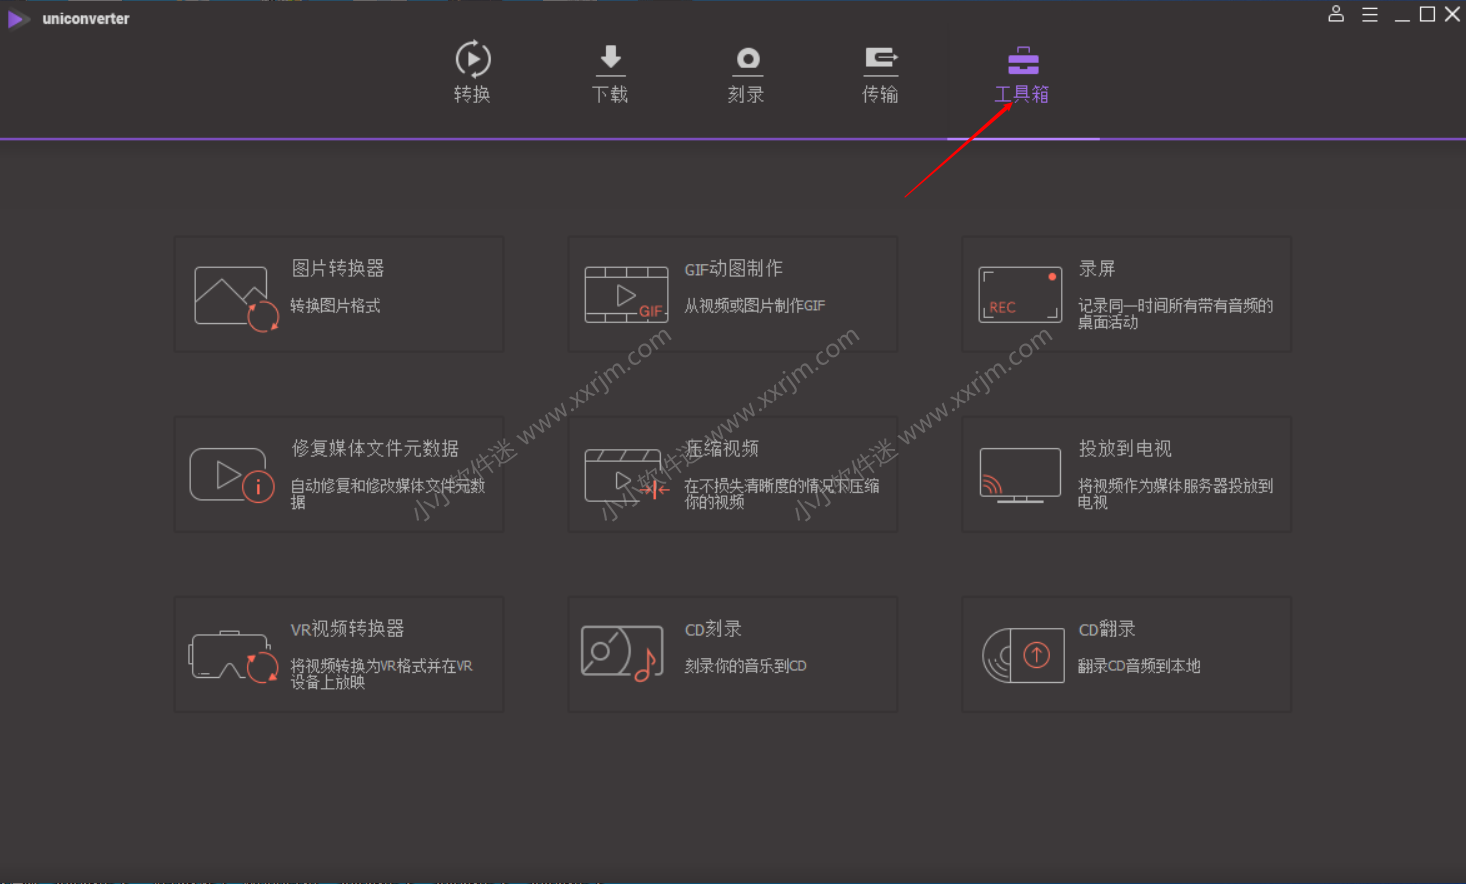 万兴全能格式转换器 v11.6.1.18 中文破解版